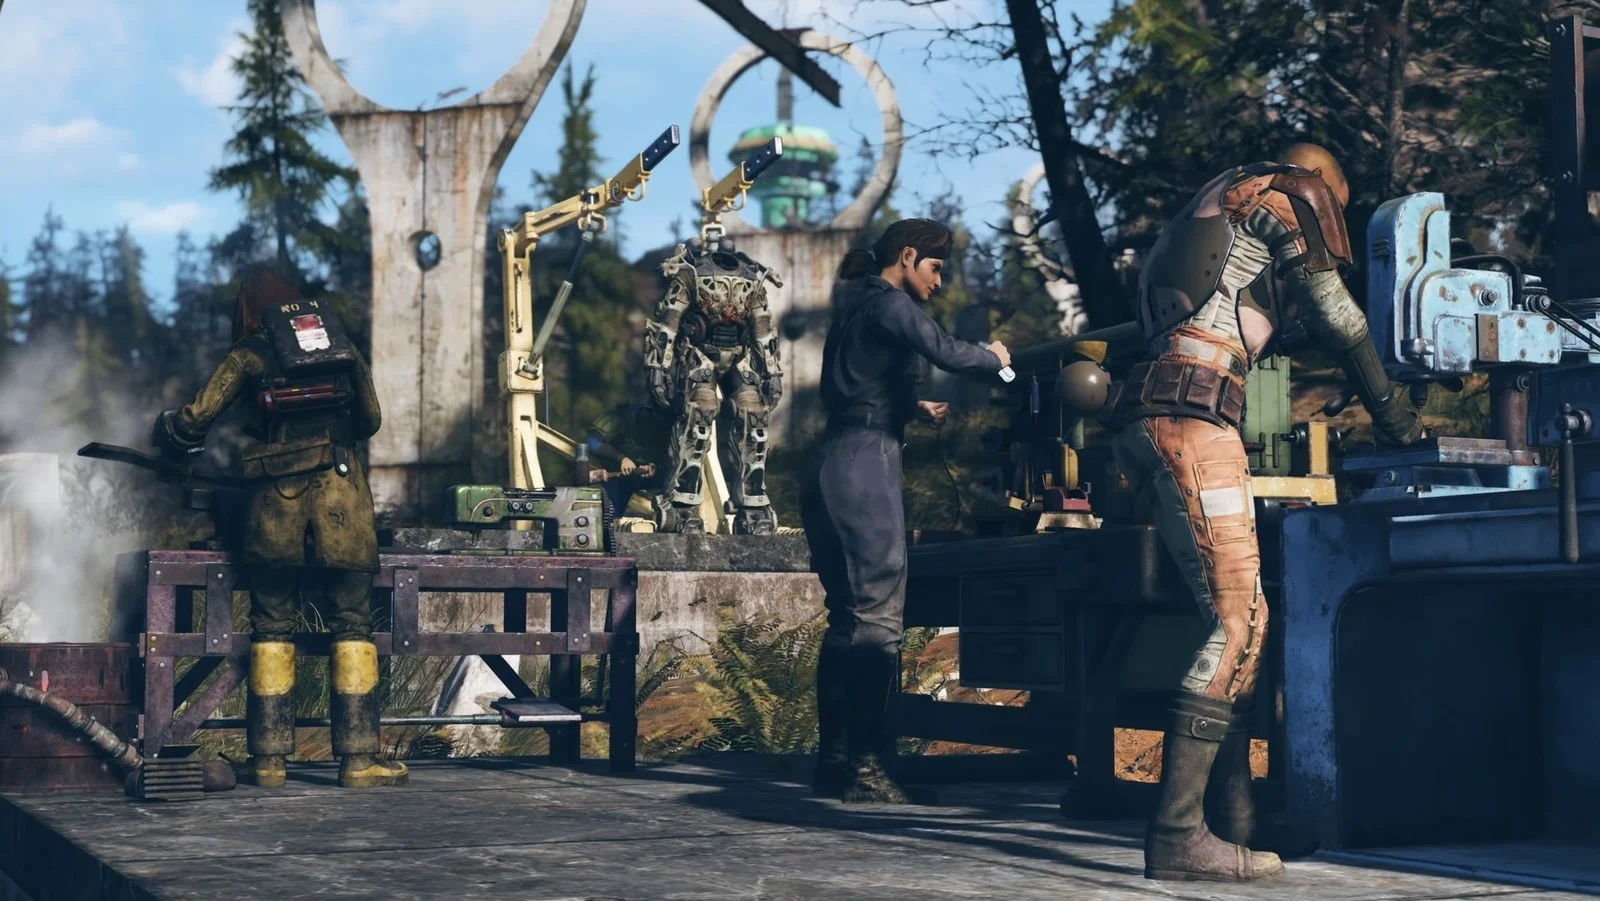 Участники бета-теста Fallout 76 пожаловались на то, что у них не сохранилась часть достижений - фото 1